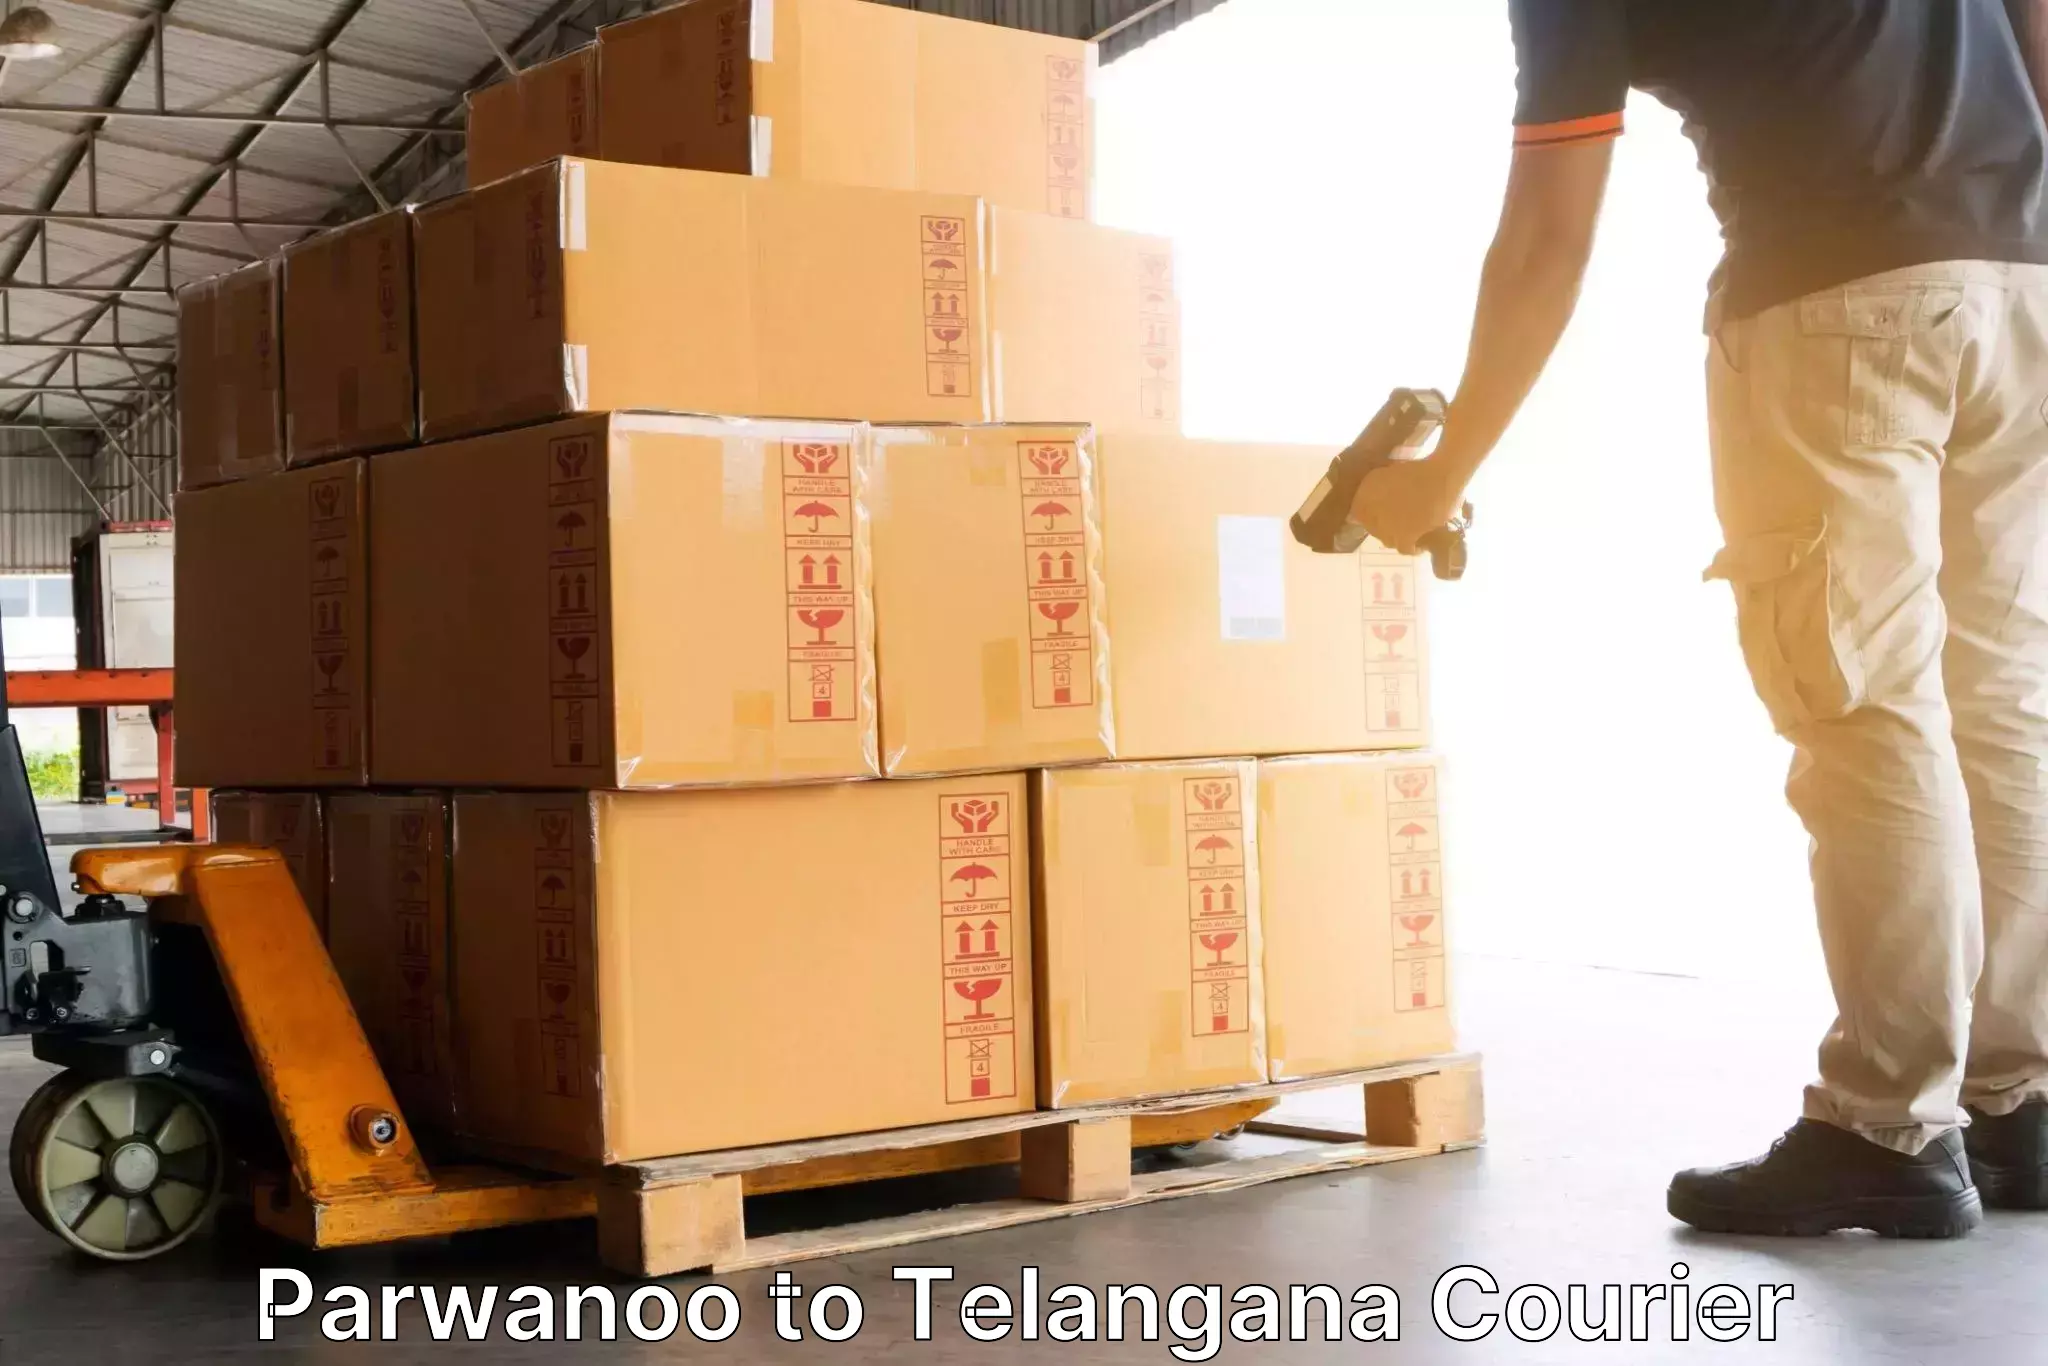 Efficient cargo handling Parwanoo to Bhainsa